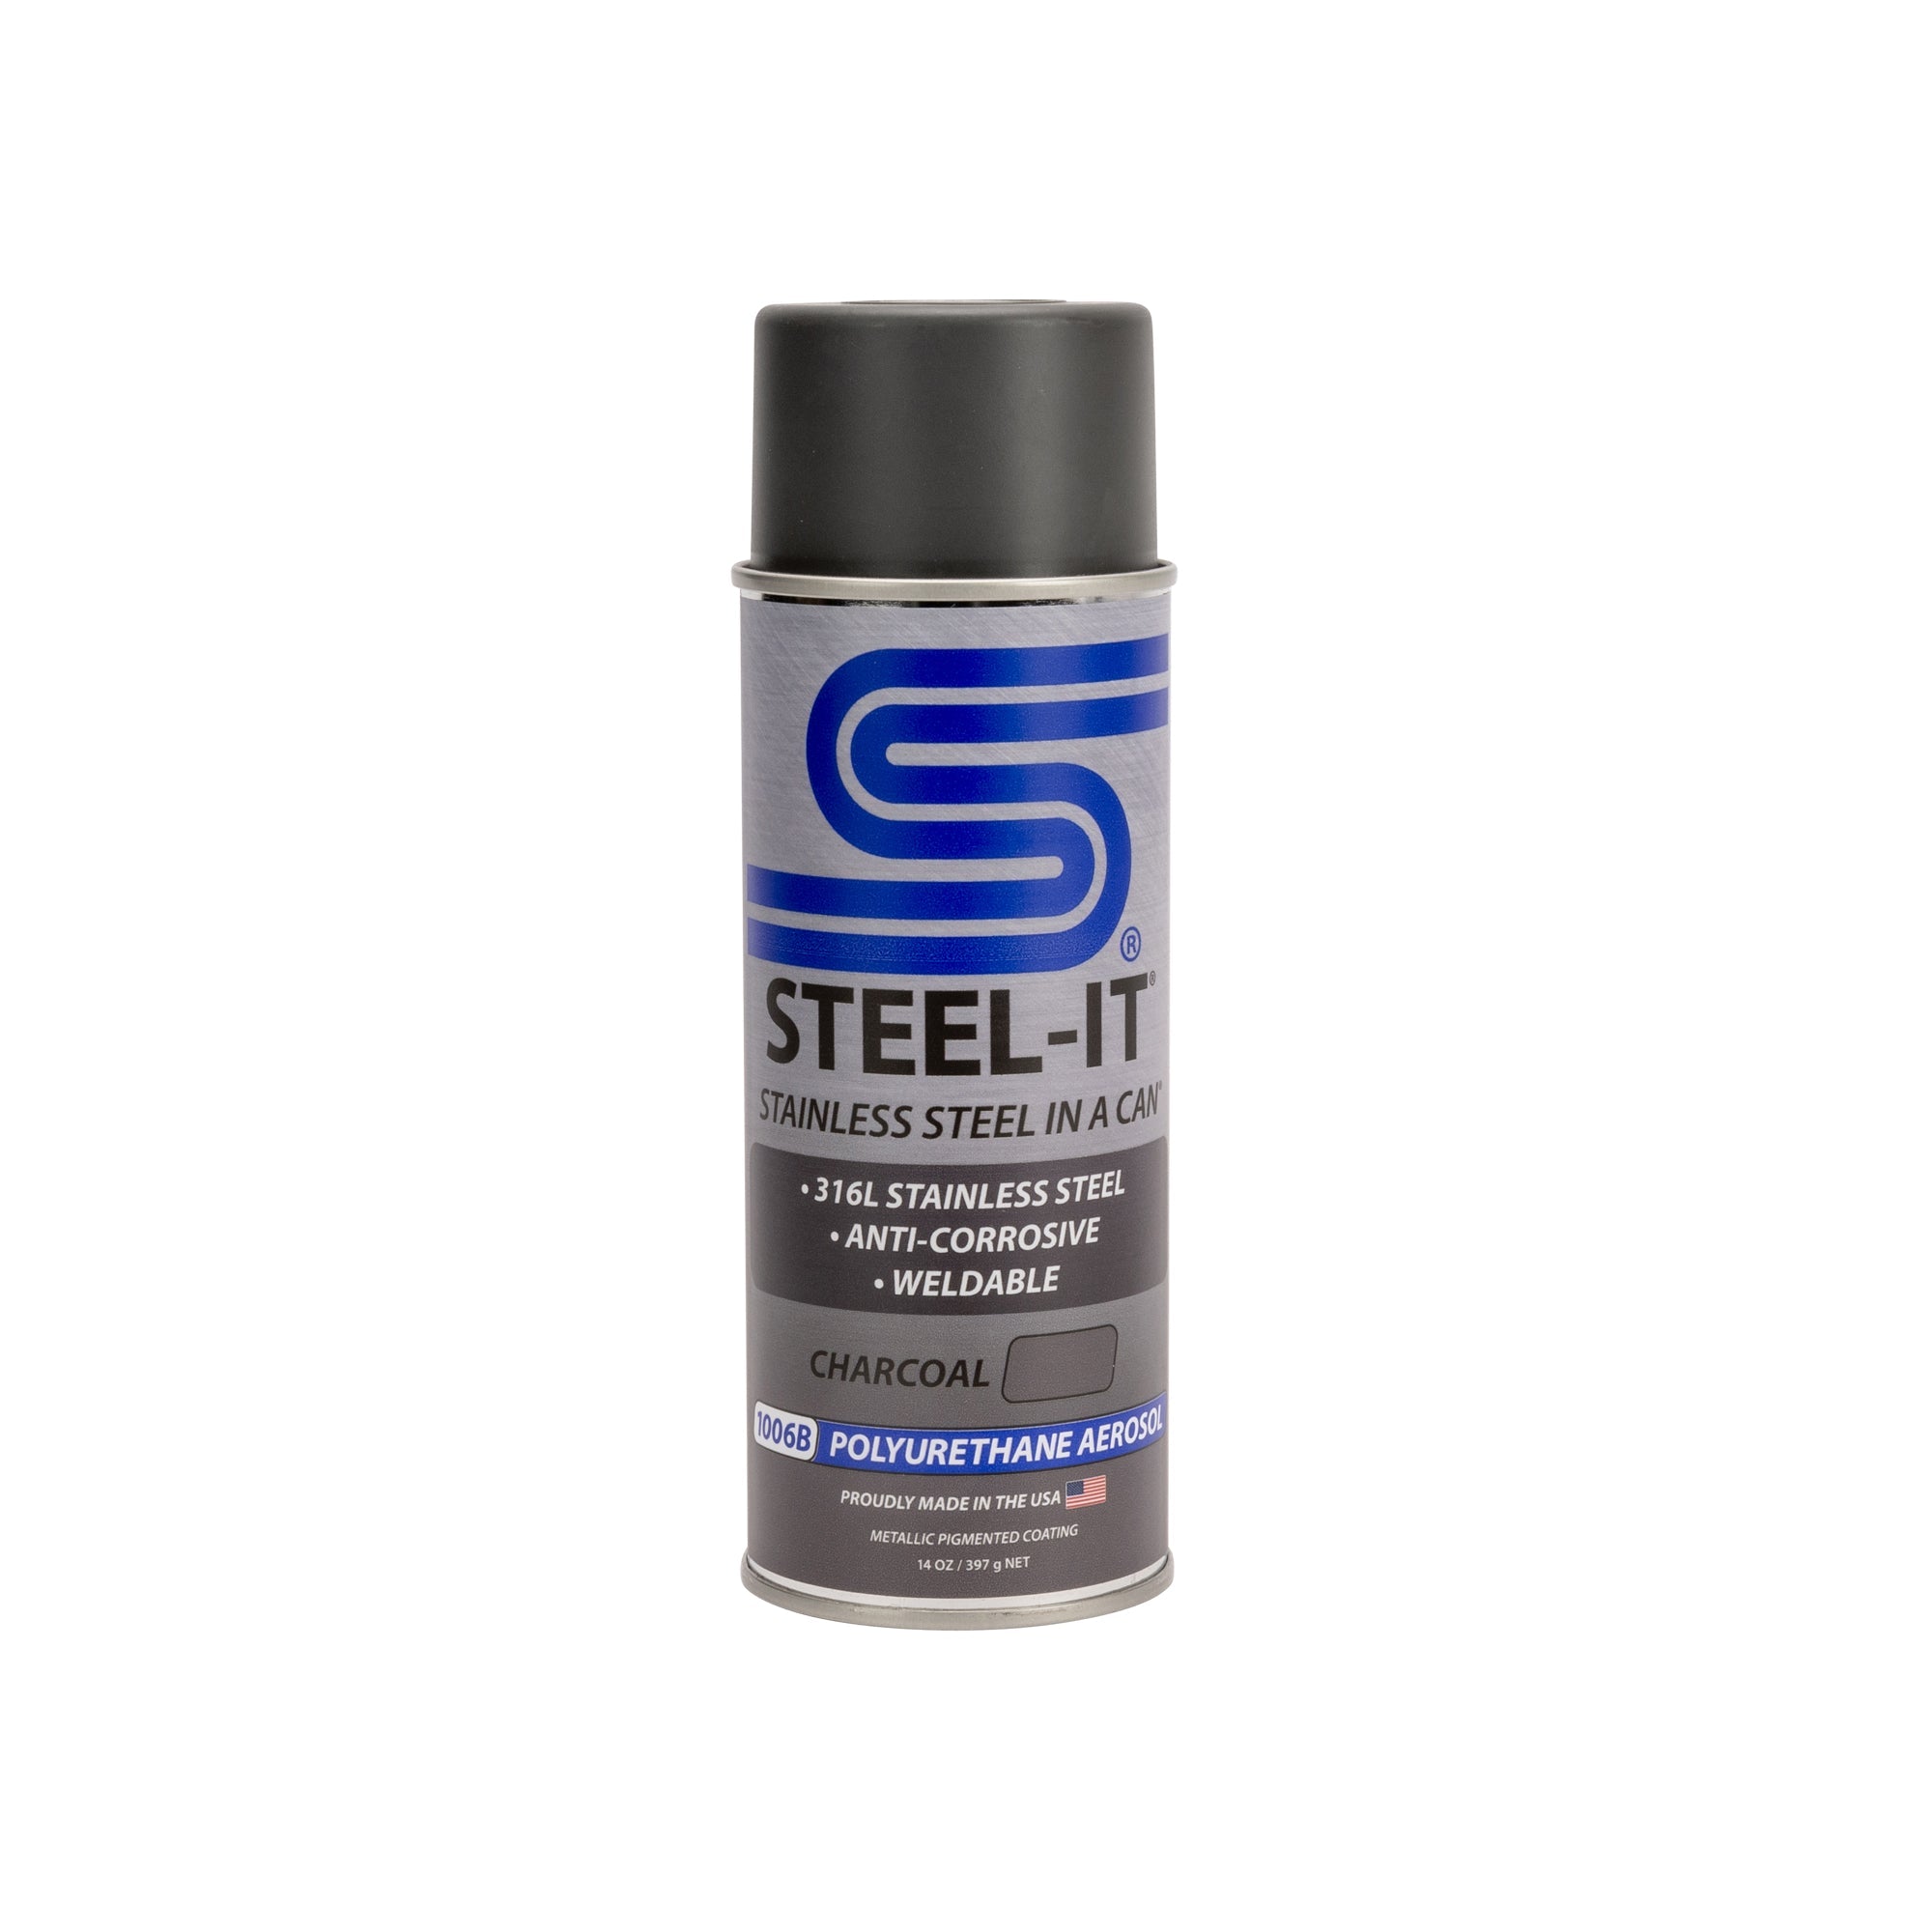 Steel-It Charcoal 1006B Polyurethane Aerosol (Case of 12 cans)